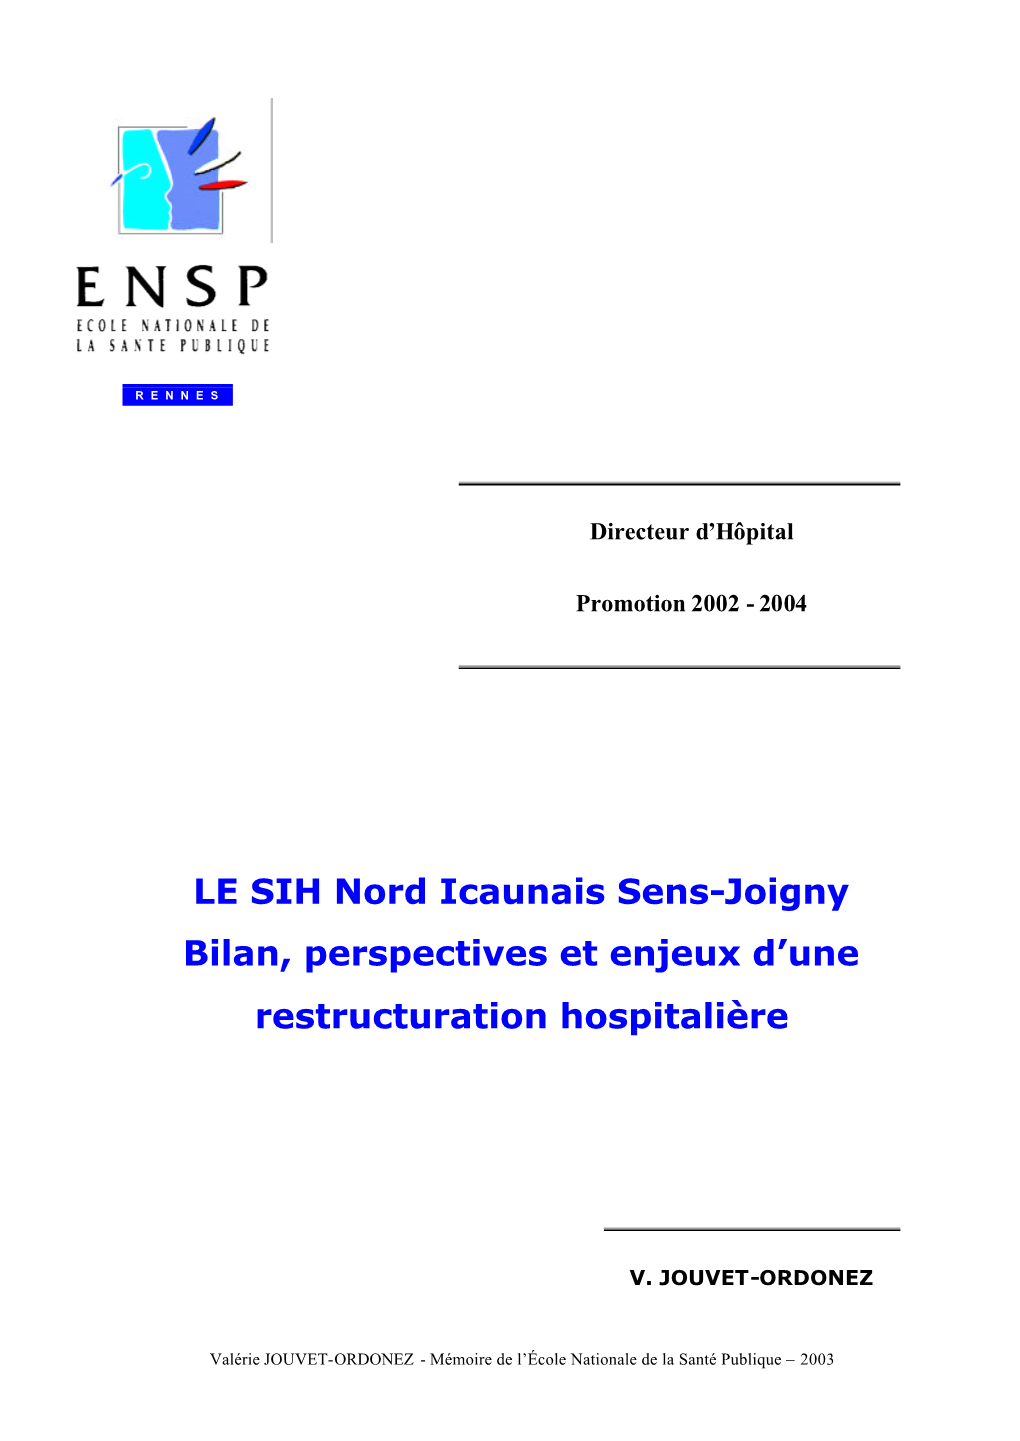 Le SIH Nord Icaunais Sens-Joigny. Bilan, Perspectives Et Enjeux D'une